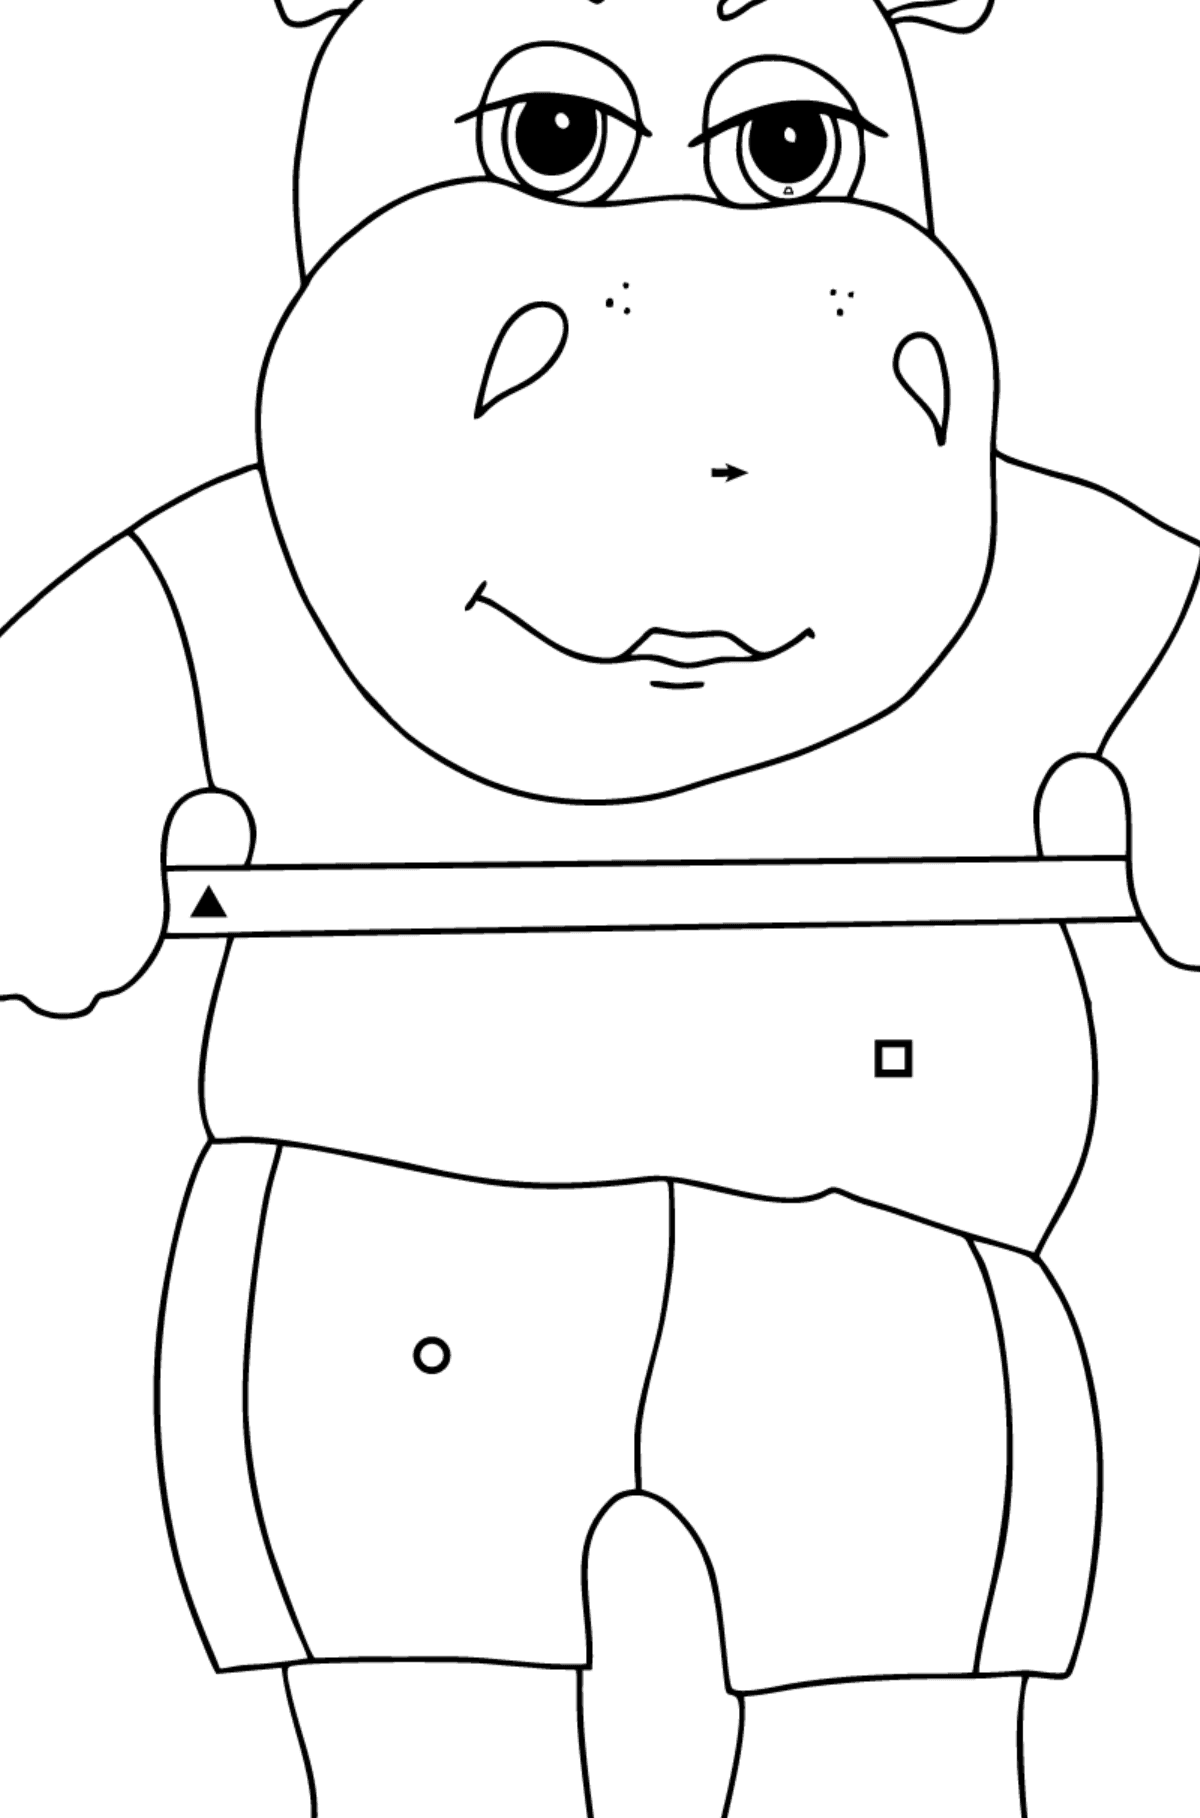 Coloriage Hippopotame athlétique (simple) - Coloriage par Symboles pour les Enfants